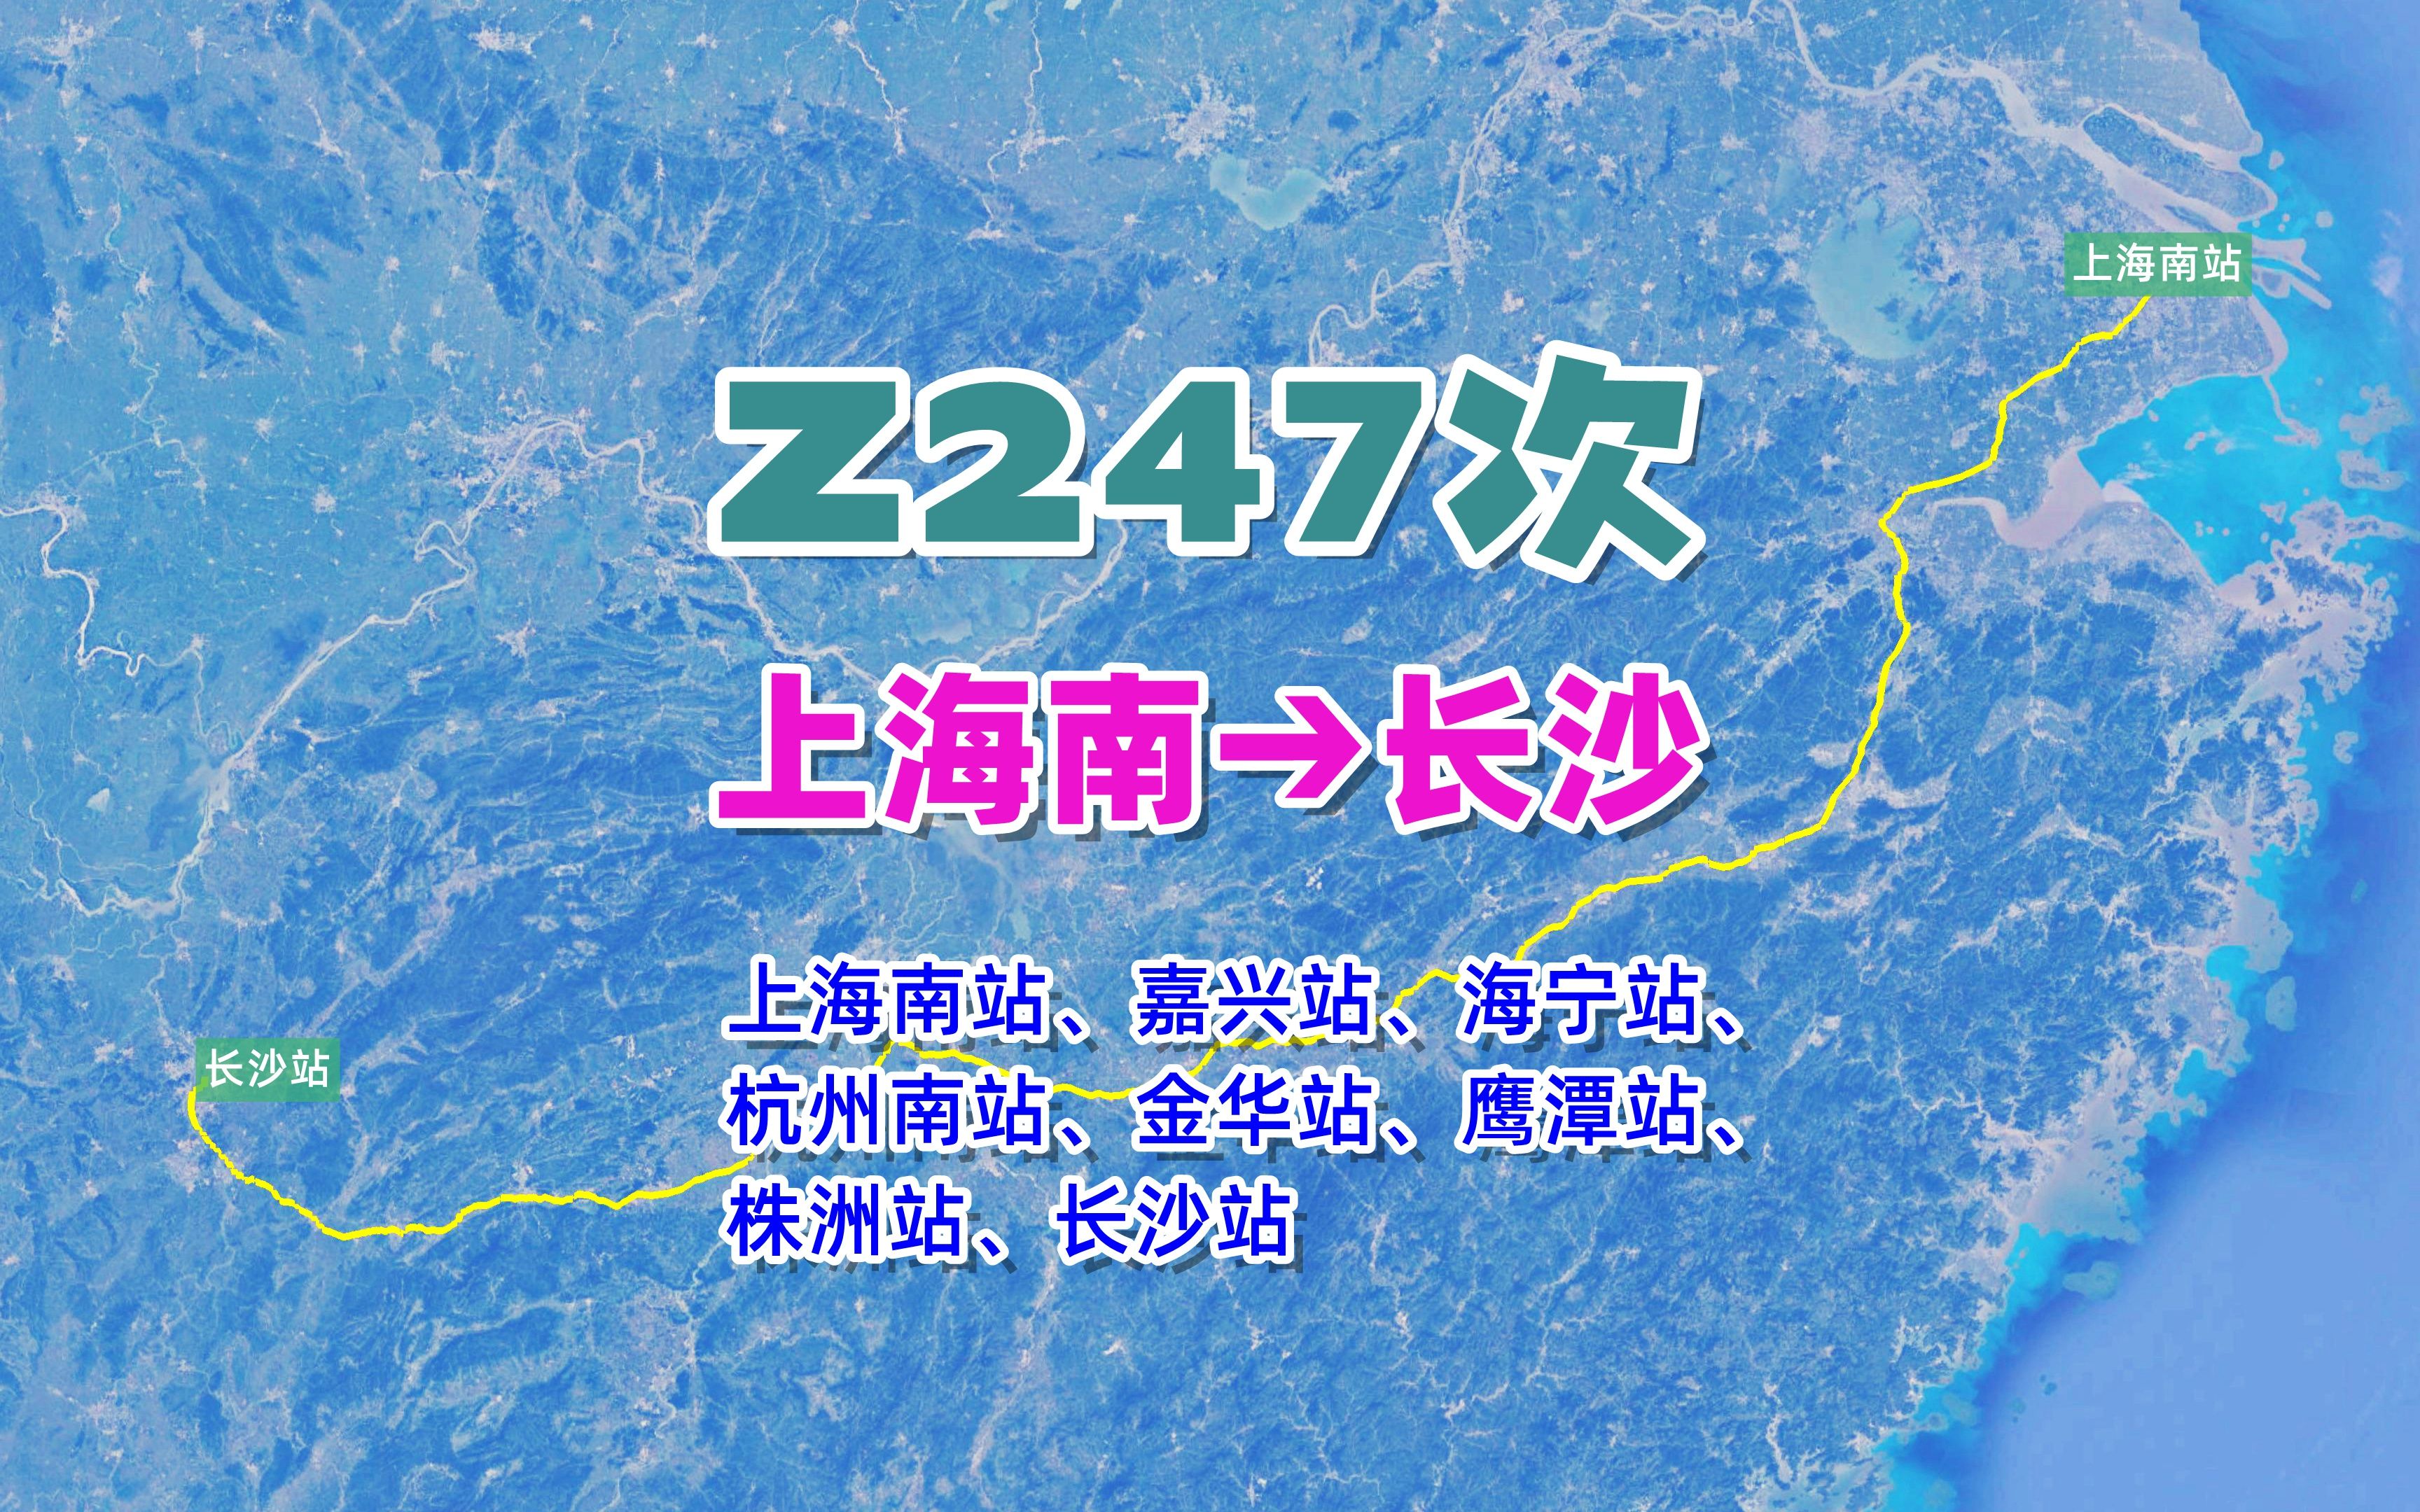 z247次列车(上海南→长沙,全程1177公里,运行时间10小时36分